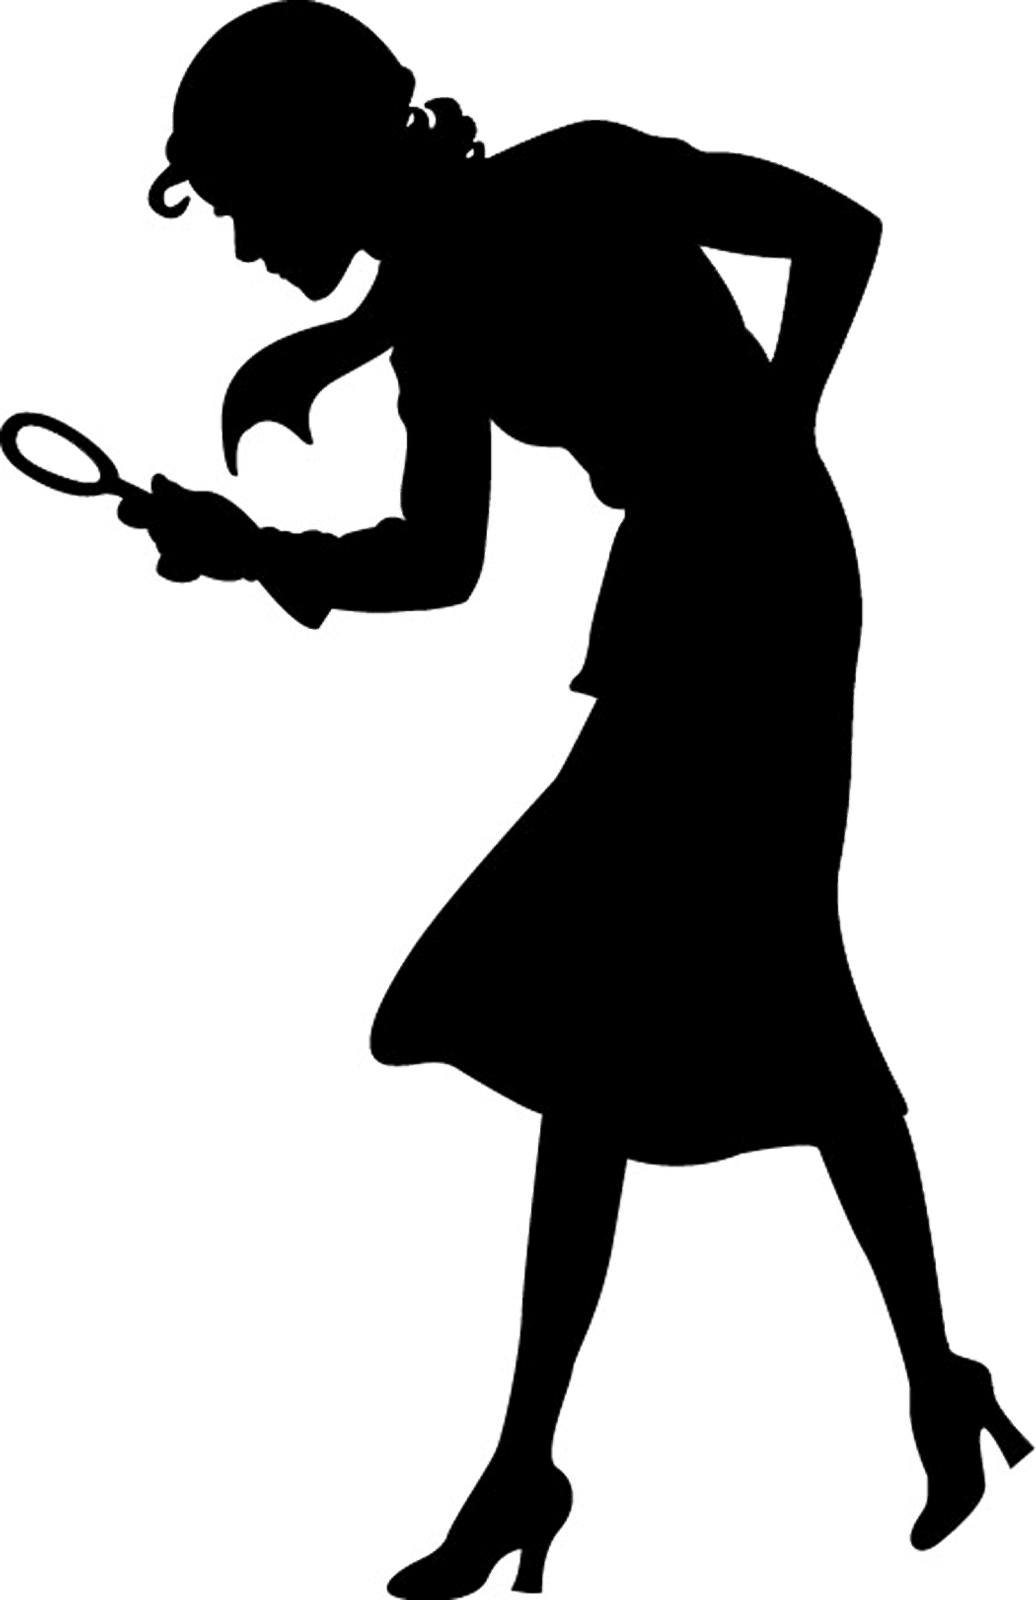 Secret Agent Silhouette Clip Art Download - James Bond Black And White -  Free Transparent PNG Clipart Images Downl…